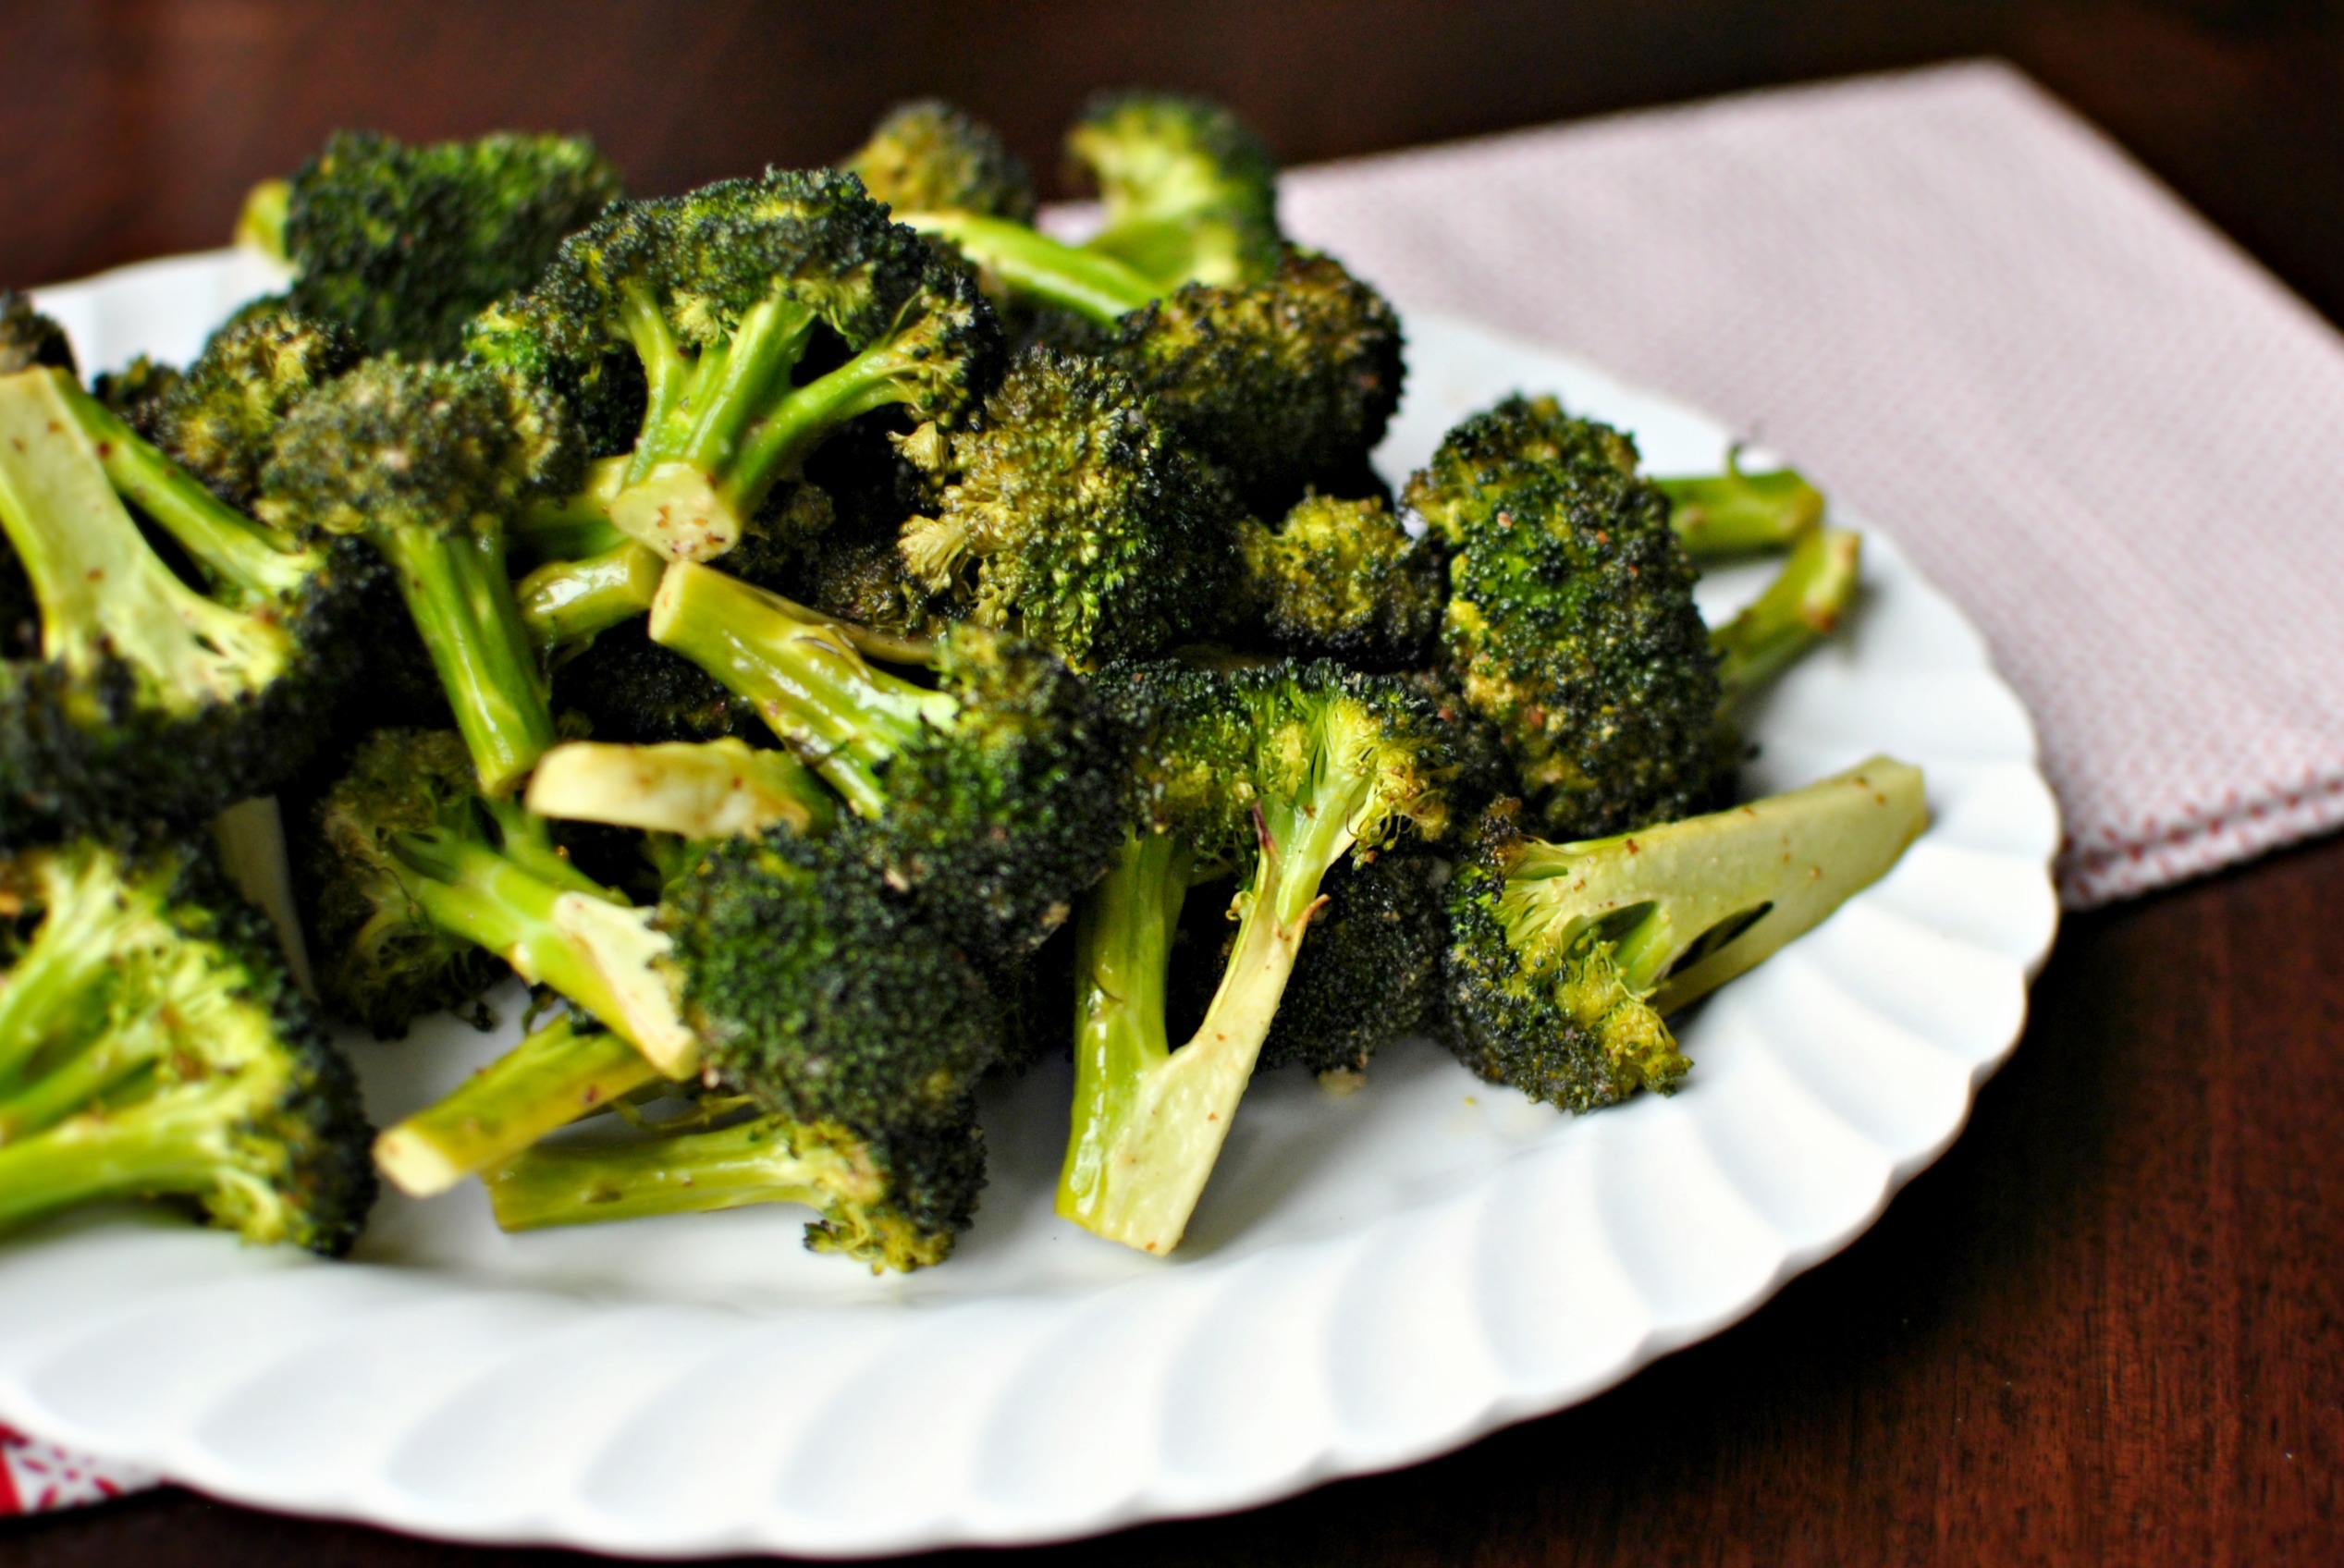 How do you season broccoli?